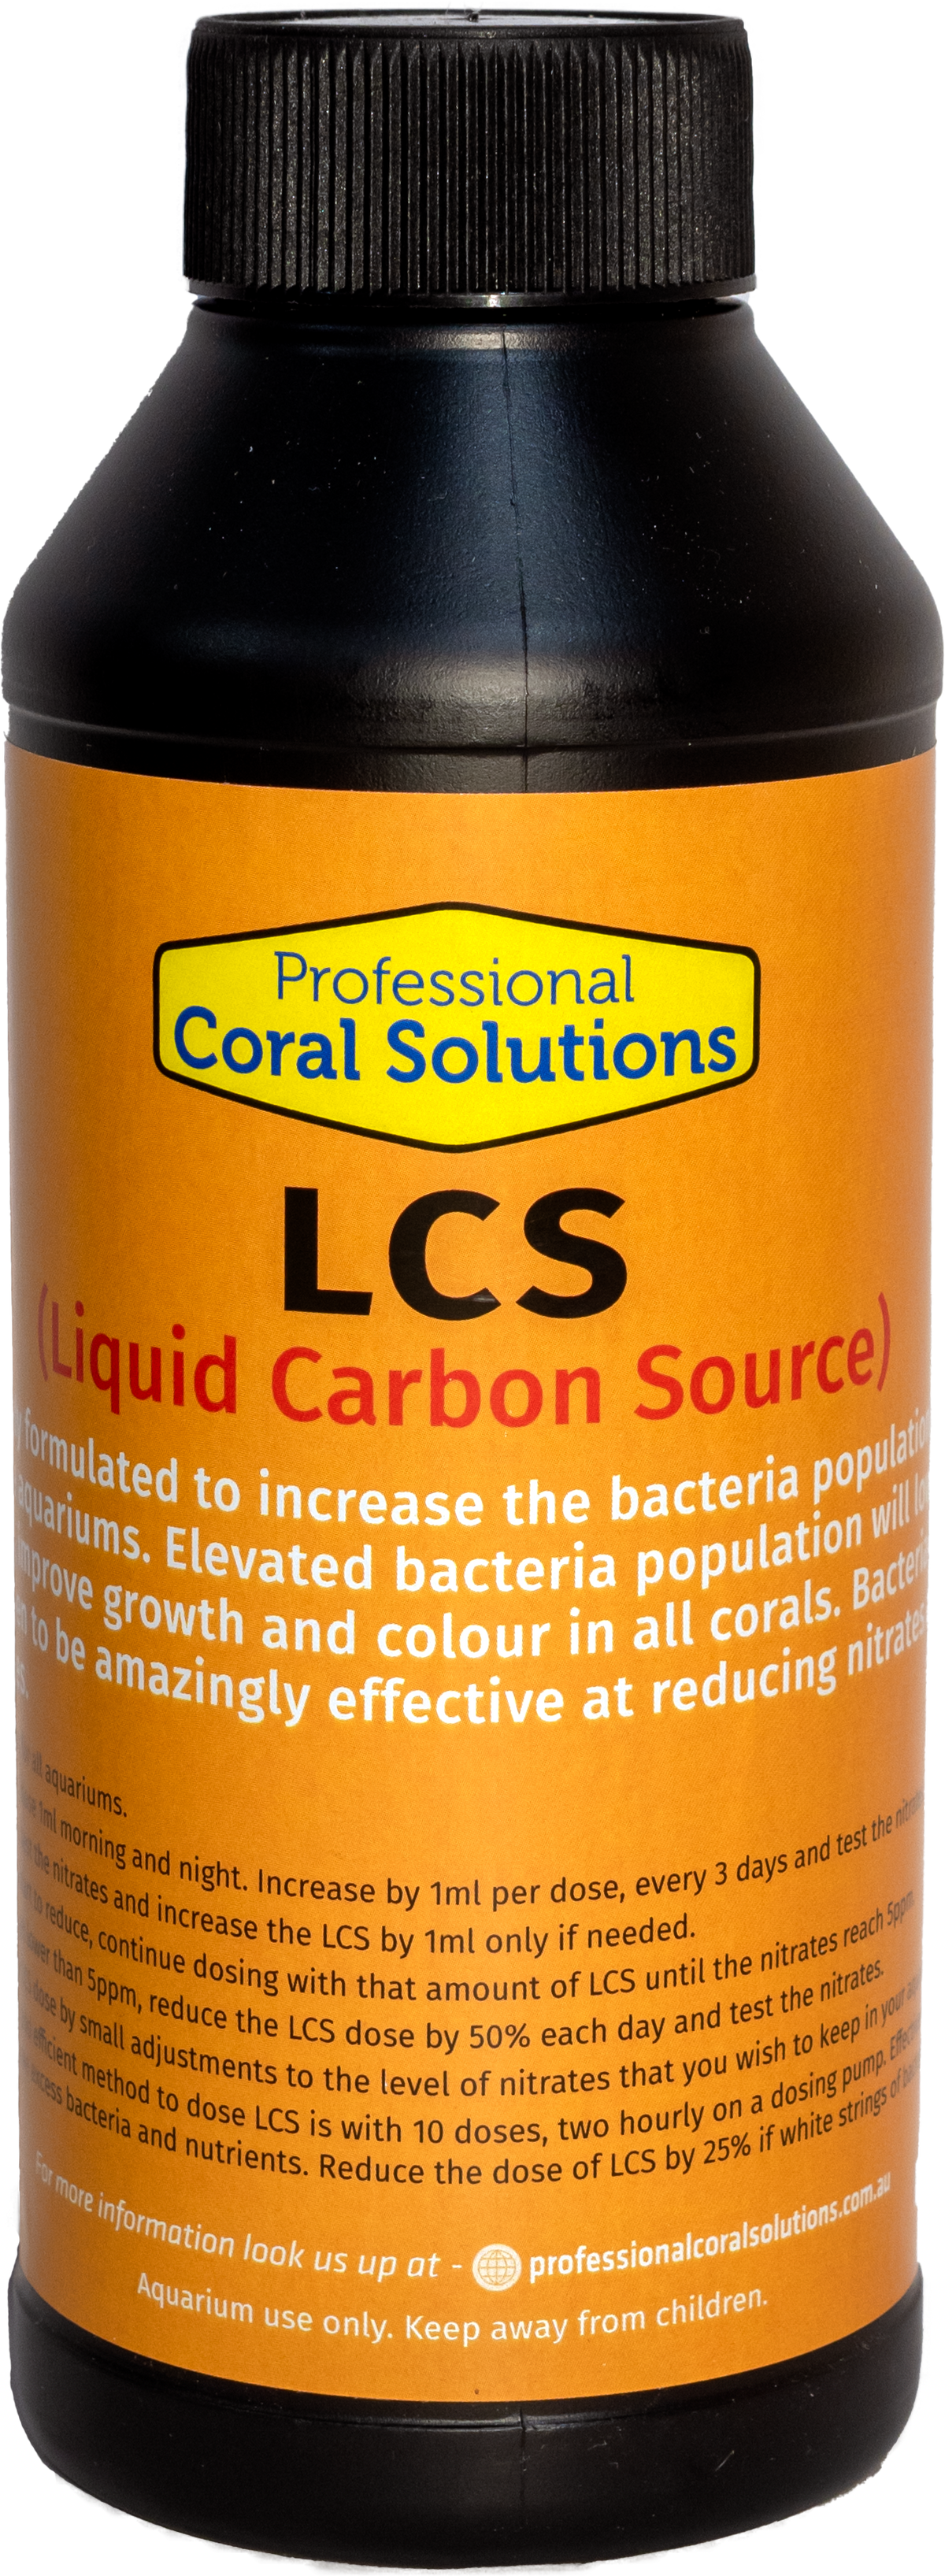 LCS (Liquid Carbon Source)